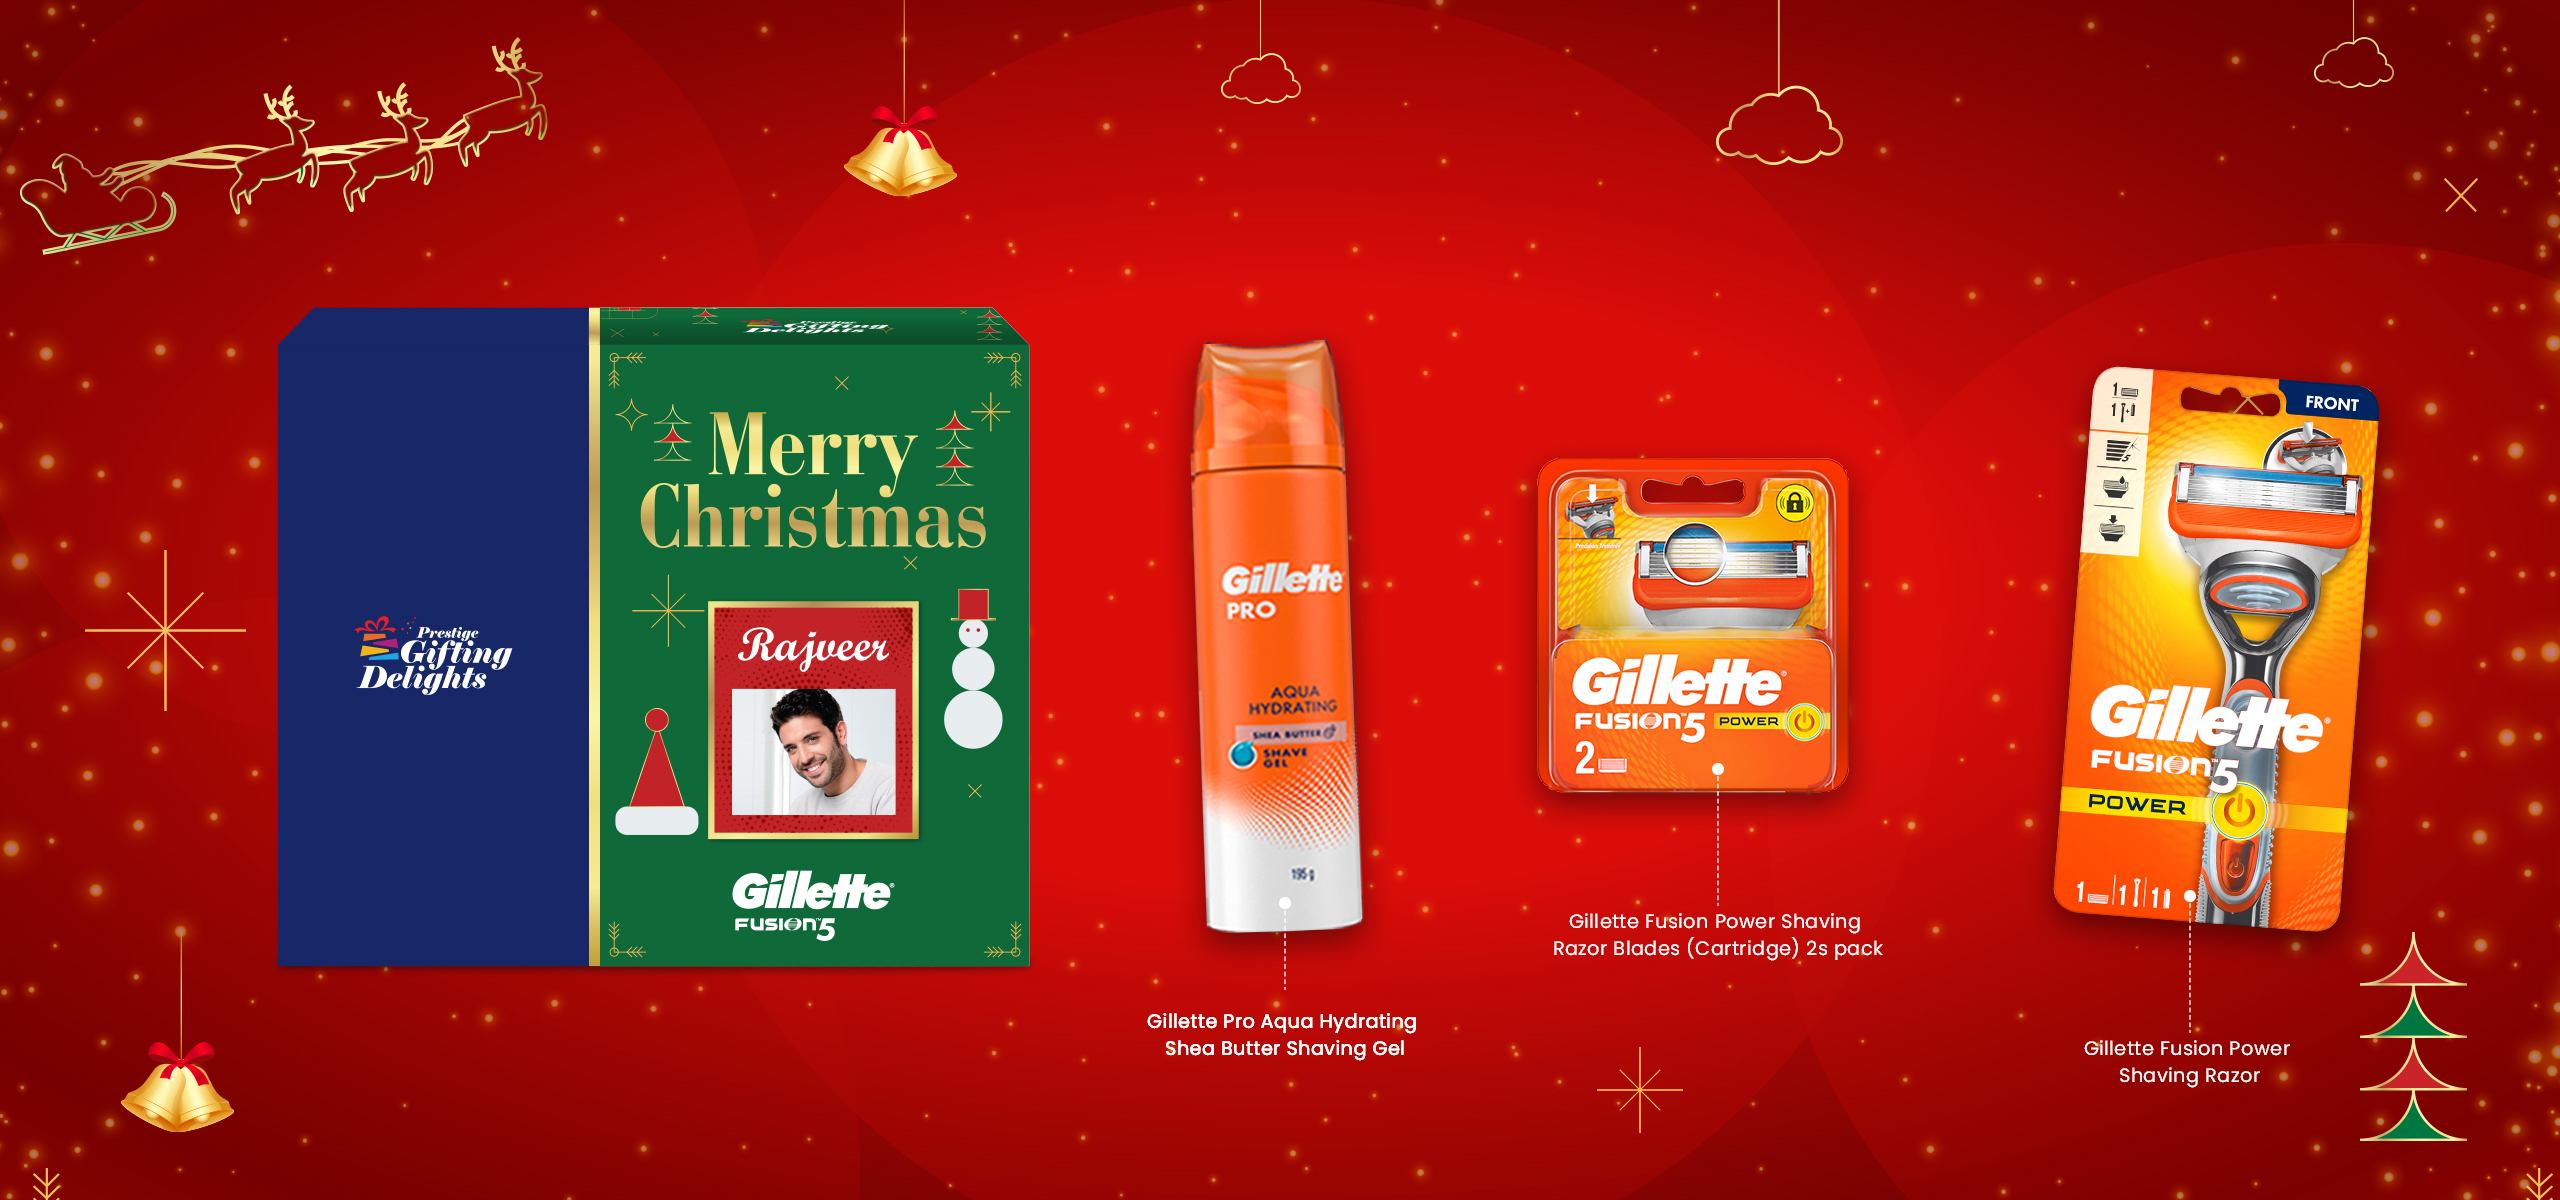 Gillette Fusion Power Razor Shaving Christmas Gift Pack for Men